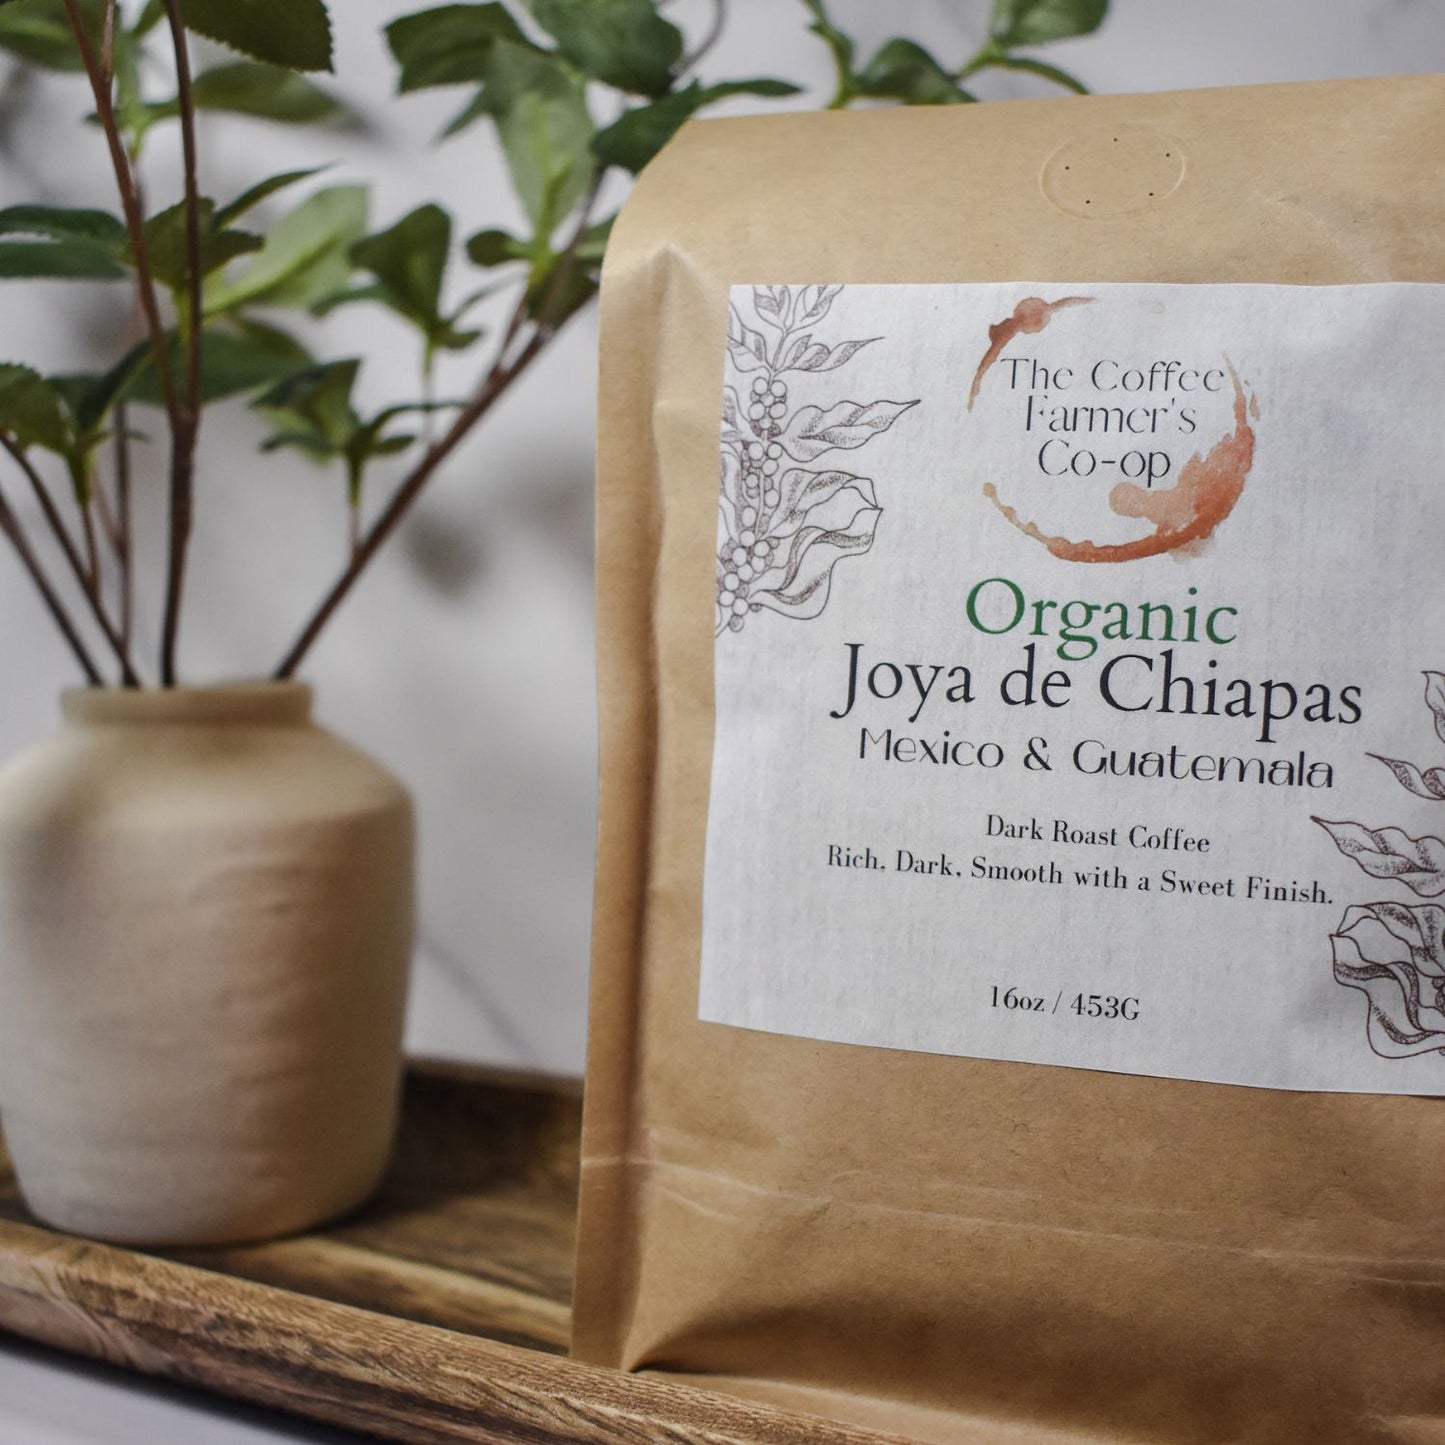 Organic Joya de Chiapas